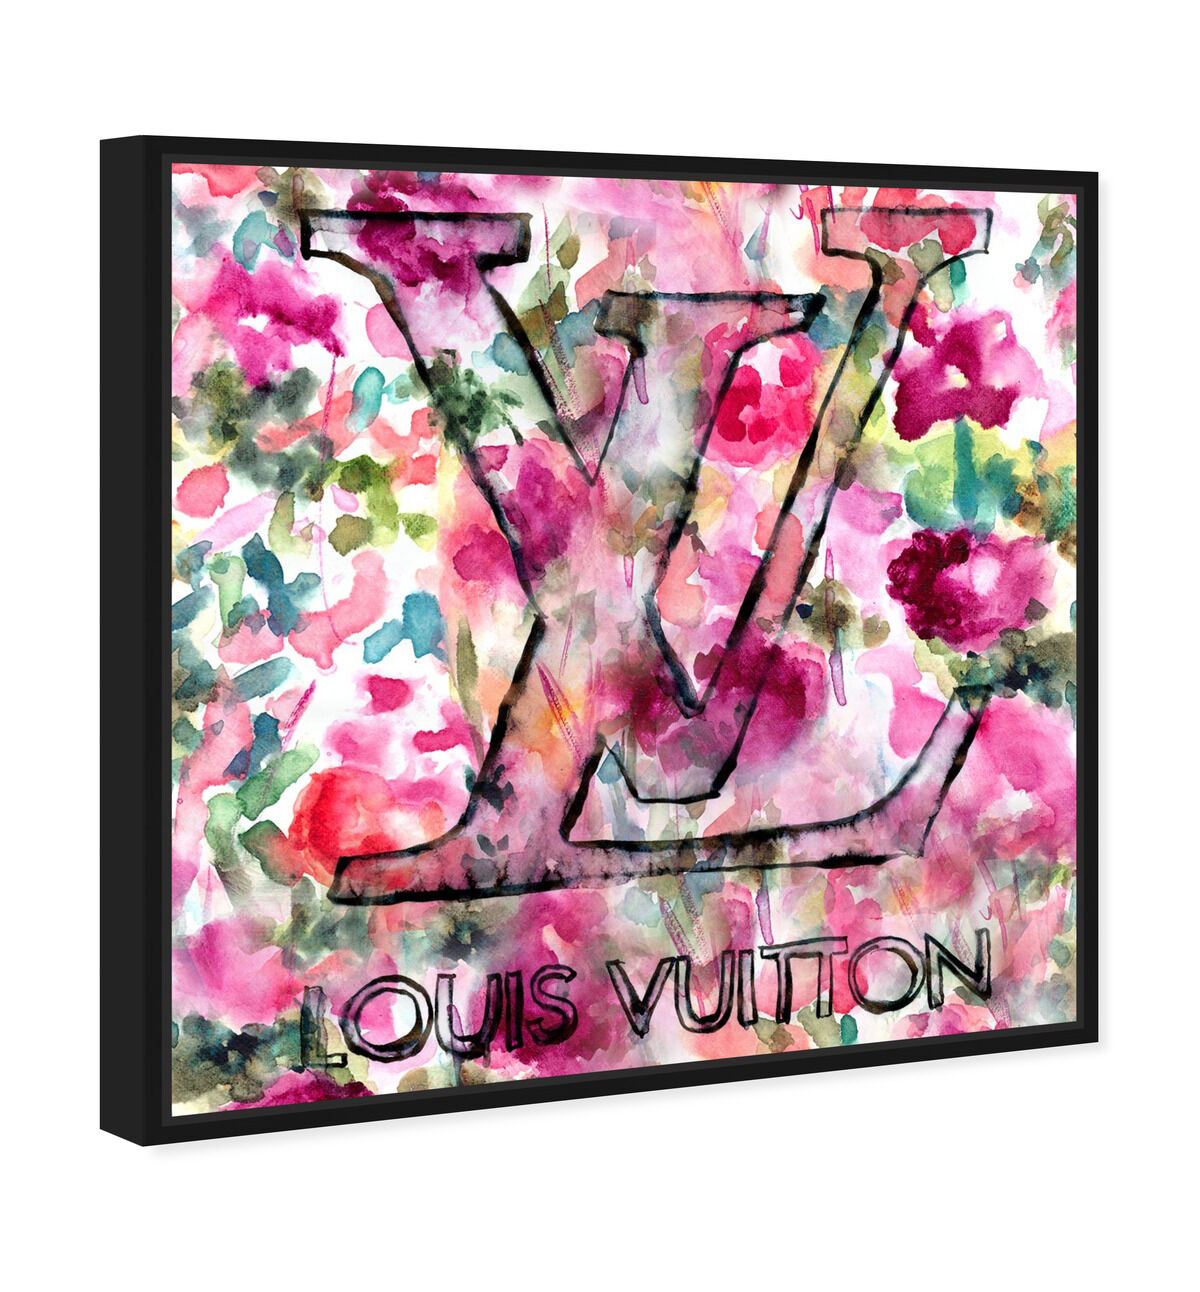 Louis Vuitton Black And White Canvas Print  Julie Schreiber  iCanvas